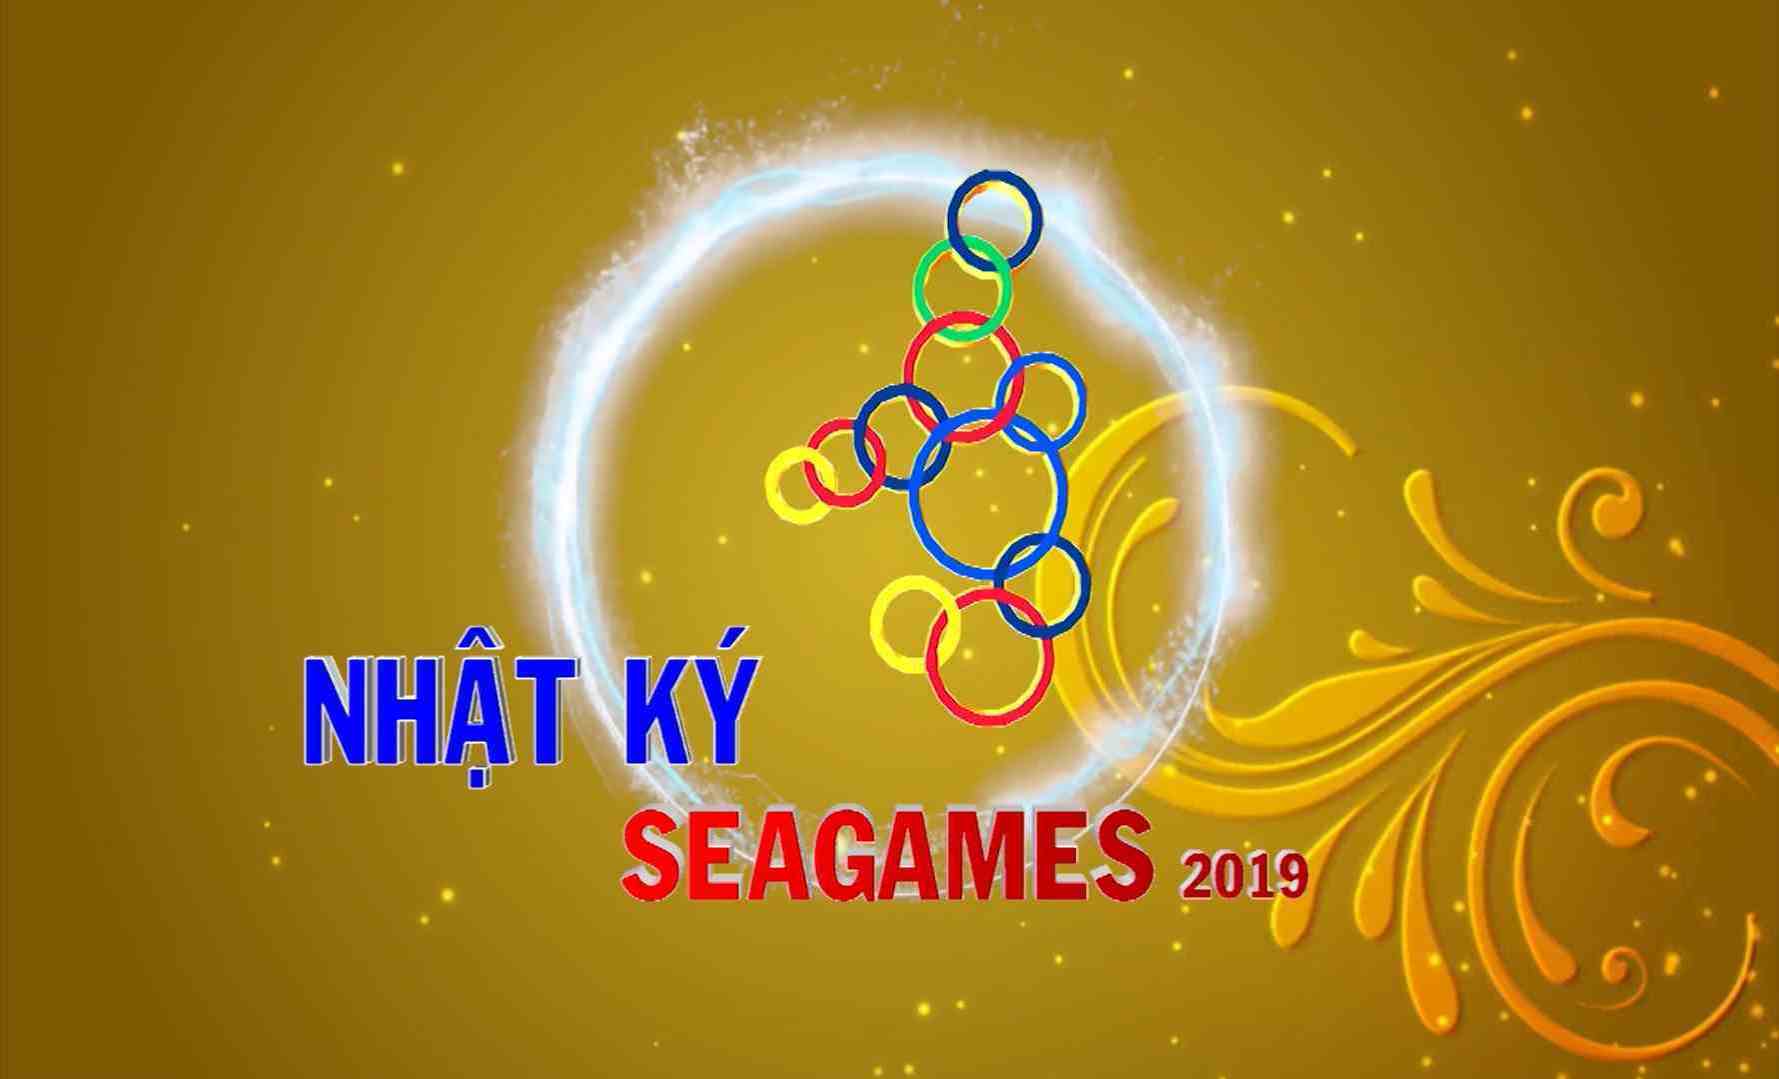 [Video] Nhật ký SEA Games 30 sáng (10-12-2019)